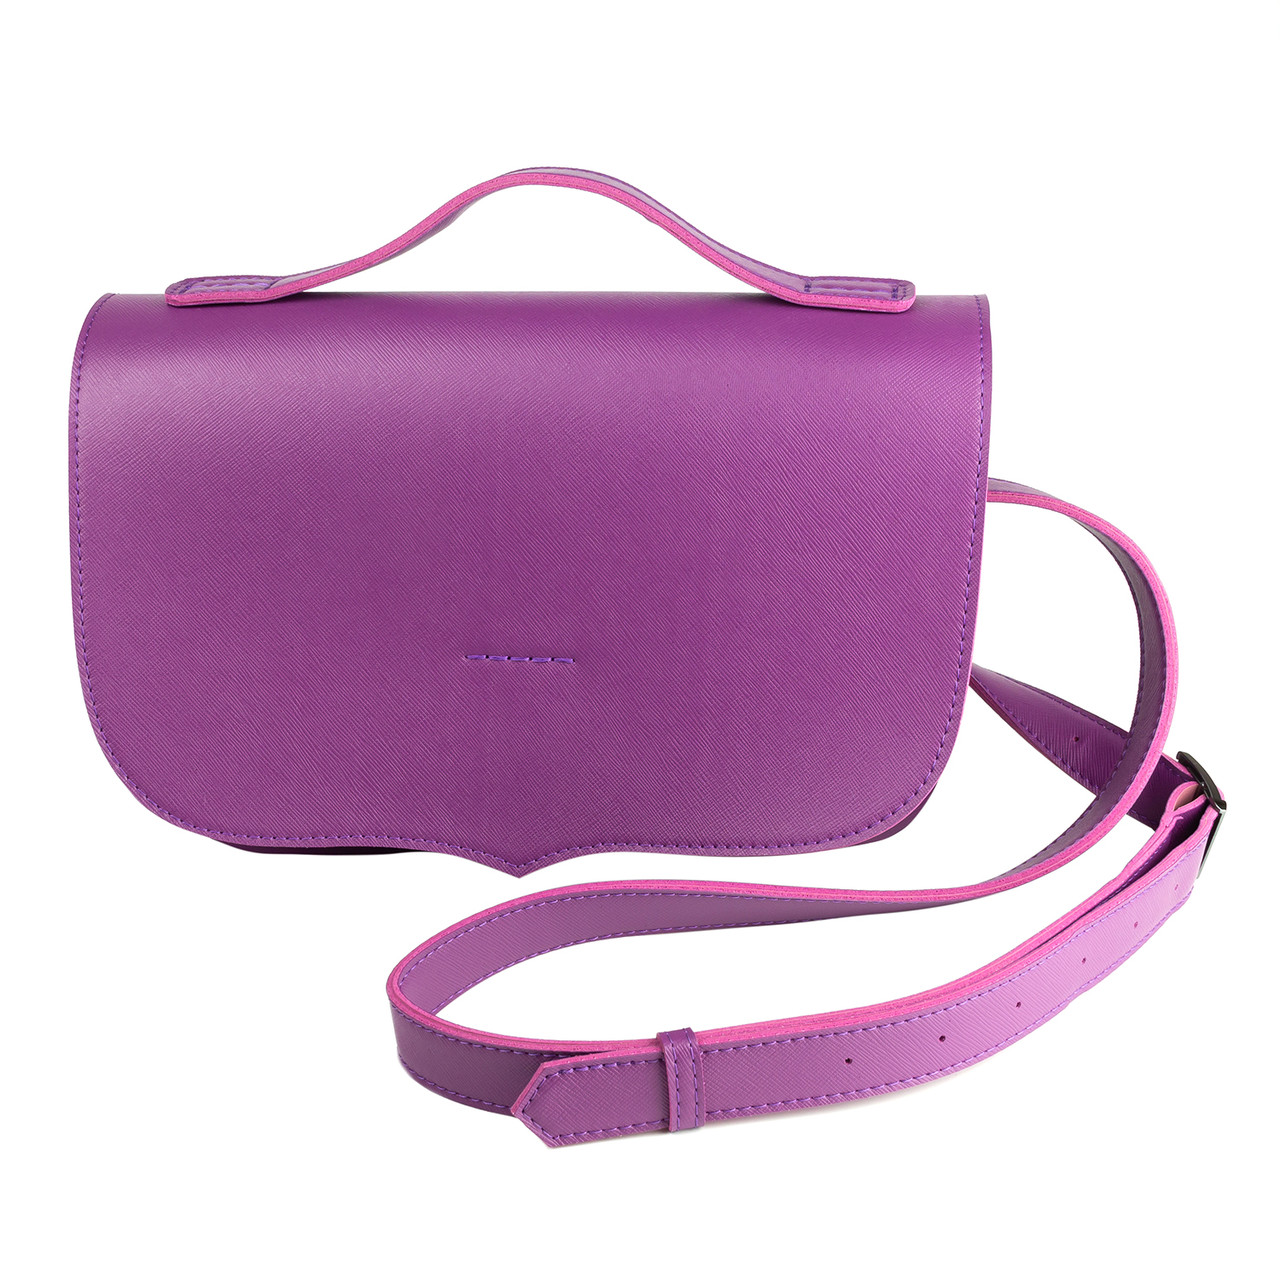 Фіолетова сумка з екошкіри без внутрішніх кишень з застібкою і ремінцем, фото 1